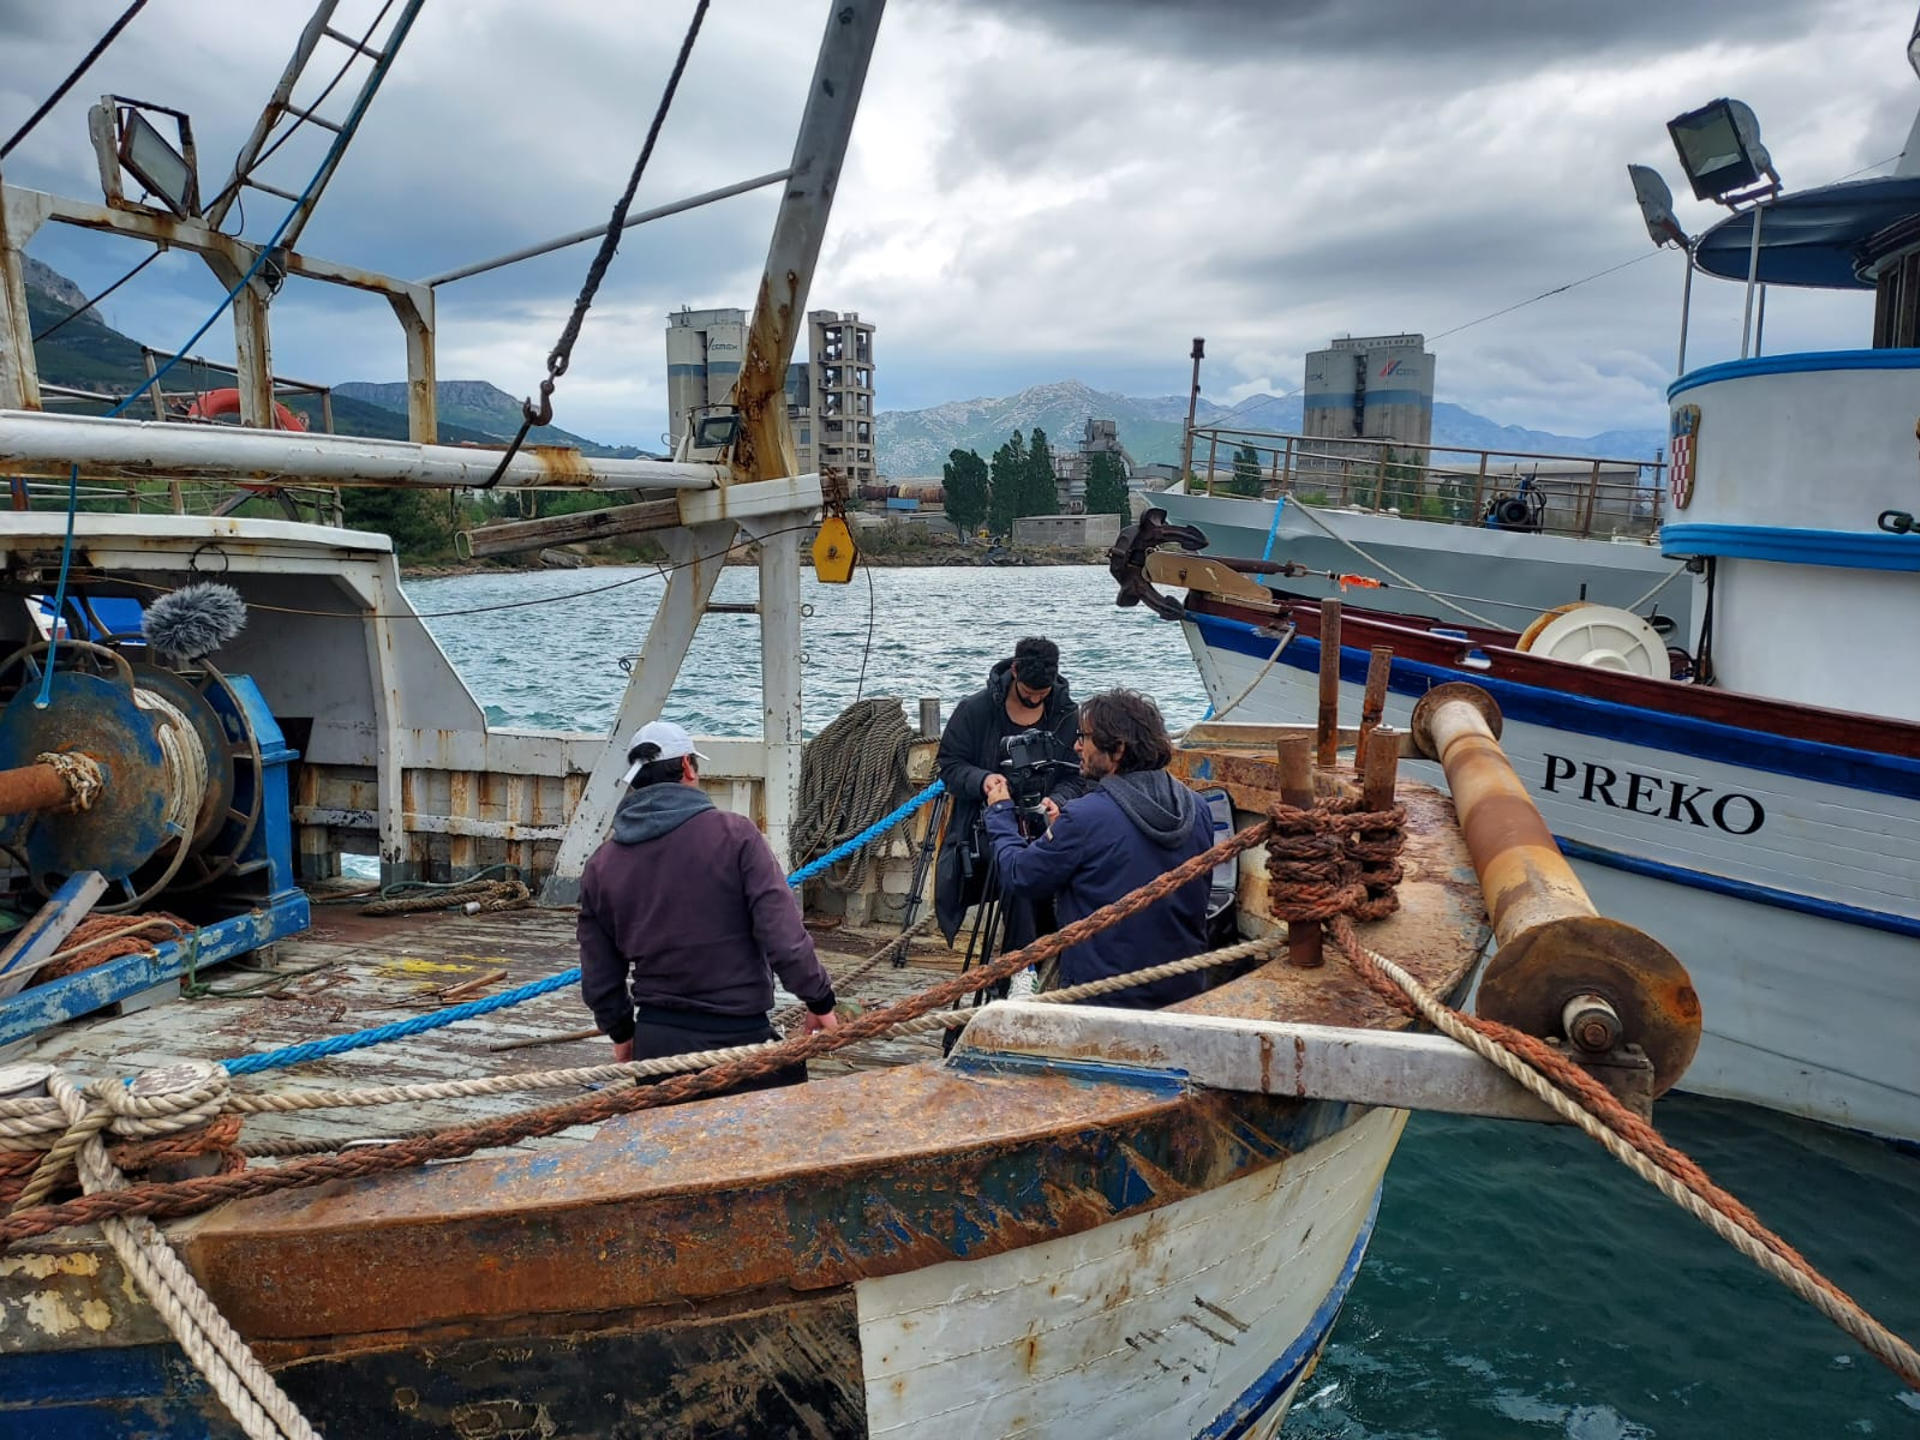 La fosa de Jabuka/Pomo, una zona frente a las costas de Italia y Croacia en el mar Adriático, ha recuperado poblaciones de peces gracias a la creación de áreas restringidas para la pesca, en un acuerdo de actores locales como científicos, pescadores y ongs y aprobadas posteriormente por la Unión Europea. En la imagen, pescadores y barcos en el área restringida a la pesca en el mar Adríatico, en una zona frente a las costas de Croacia e Italia y conocida como Jabuca/Pomo.EFE/ MedReAct/Francesco Cabras/SOLO USO EDITORIAL/SOLO DISPONIBLE PARA ILUSTRAR LA NOTICIA QUE ACOMPAÑA (CRÉDITO OBLIGATORIO)
